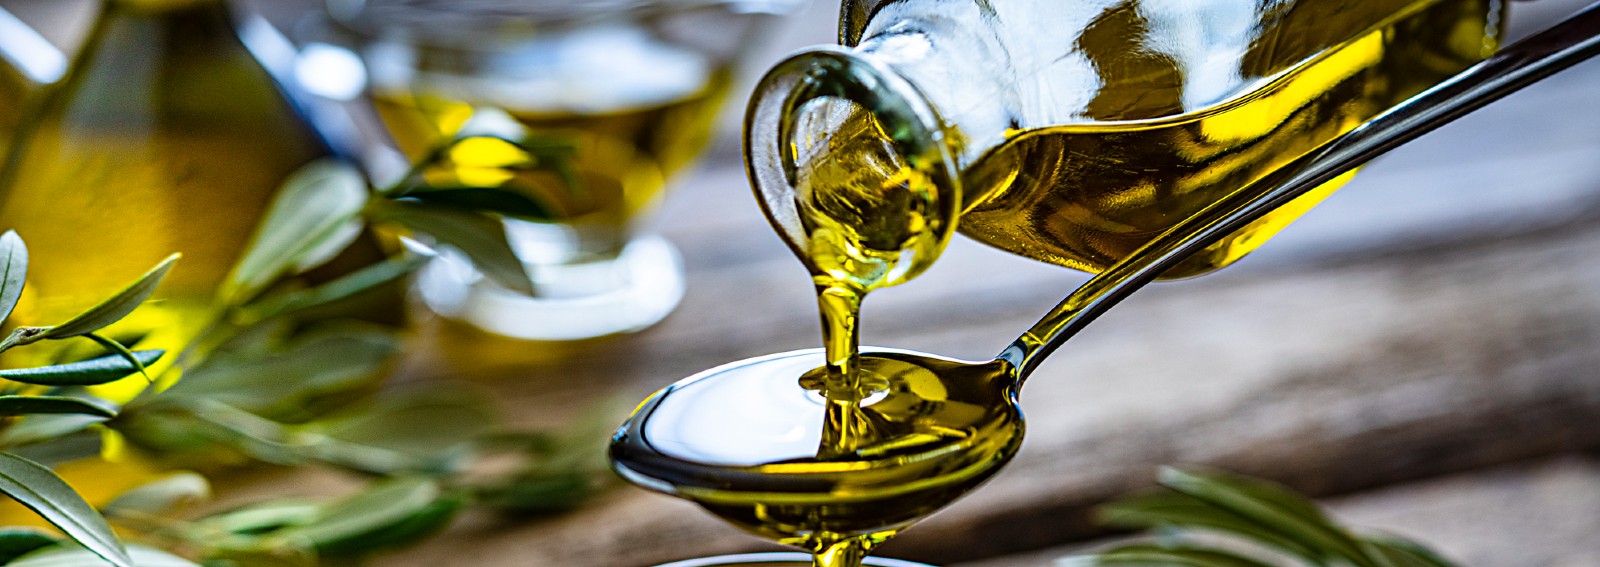 condimenti olio d'oliva hero